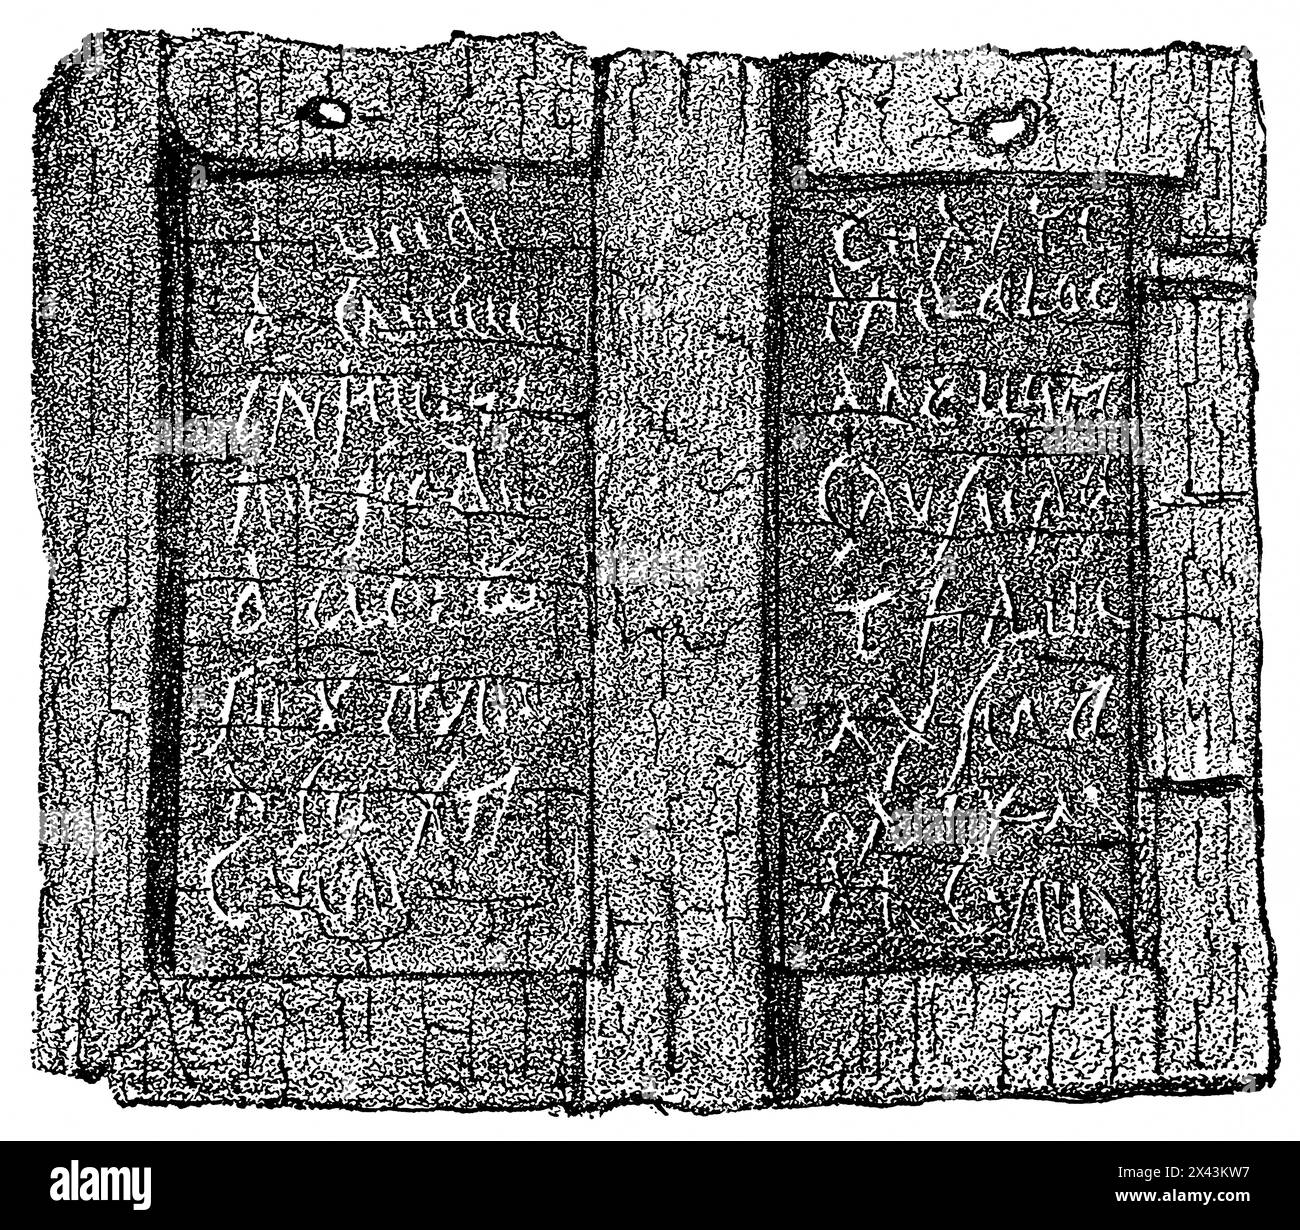 Gutschein für Quittung auf einem Wachsbrett, 1. Jahrhundert n. Chr., gefunden in Pompeji im Jahr 1875, Römisches Reich, Italien, historische Illustration 1884 Stockfoto